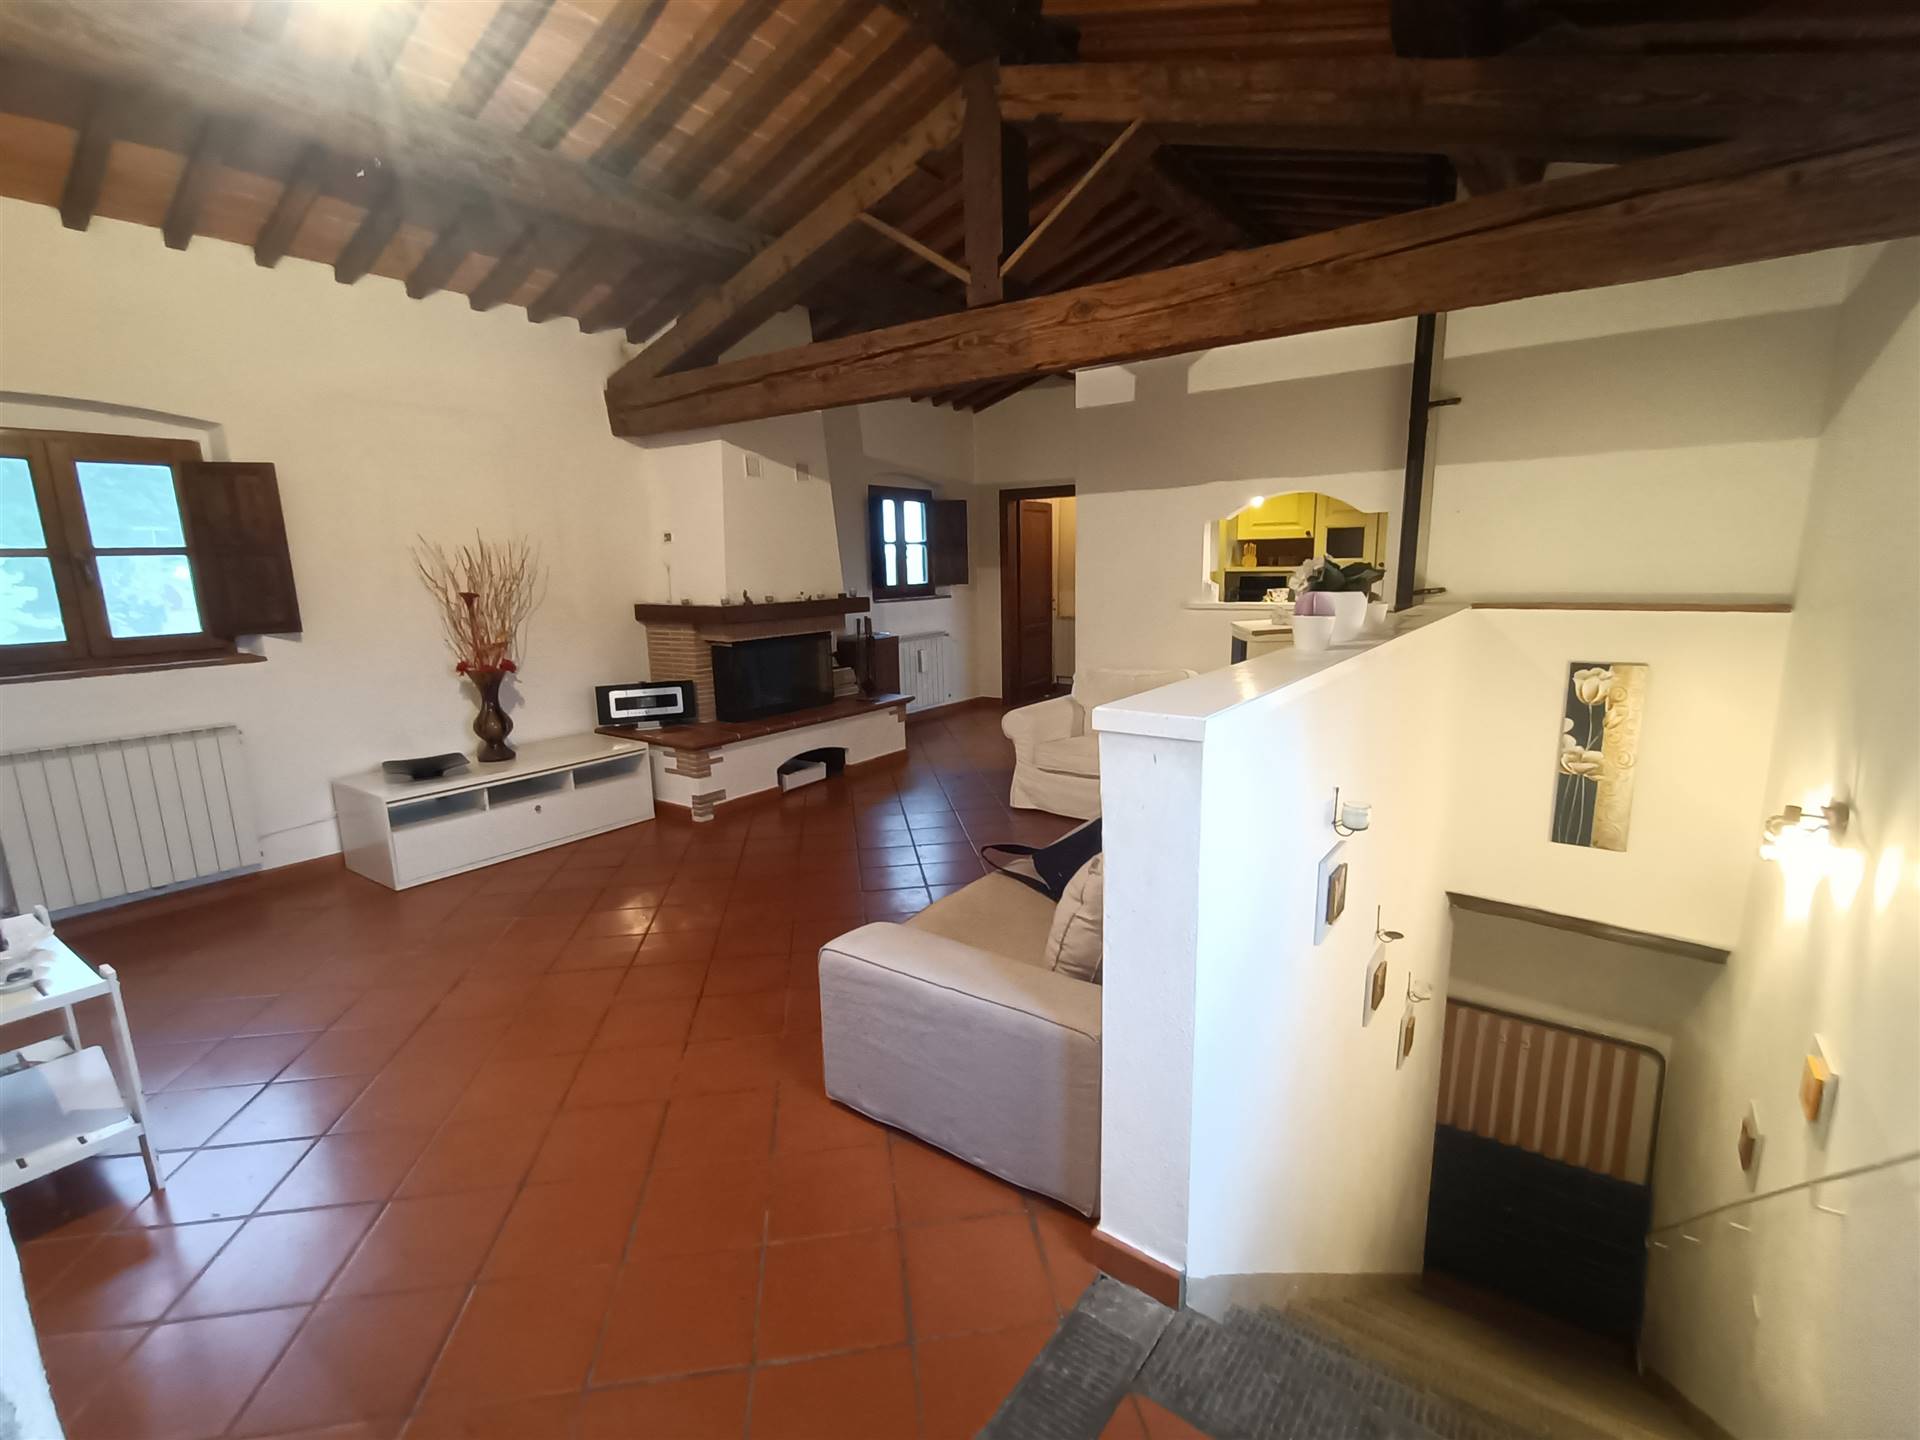 Appartamento in vendita a Castelfranco Piandiscò, 5 locali, zona Località: MATASSINO, prezzo € 200.000 | CambioCasa.it